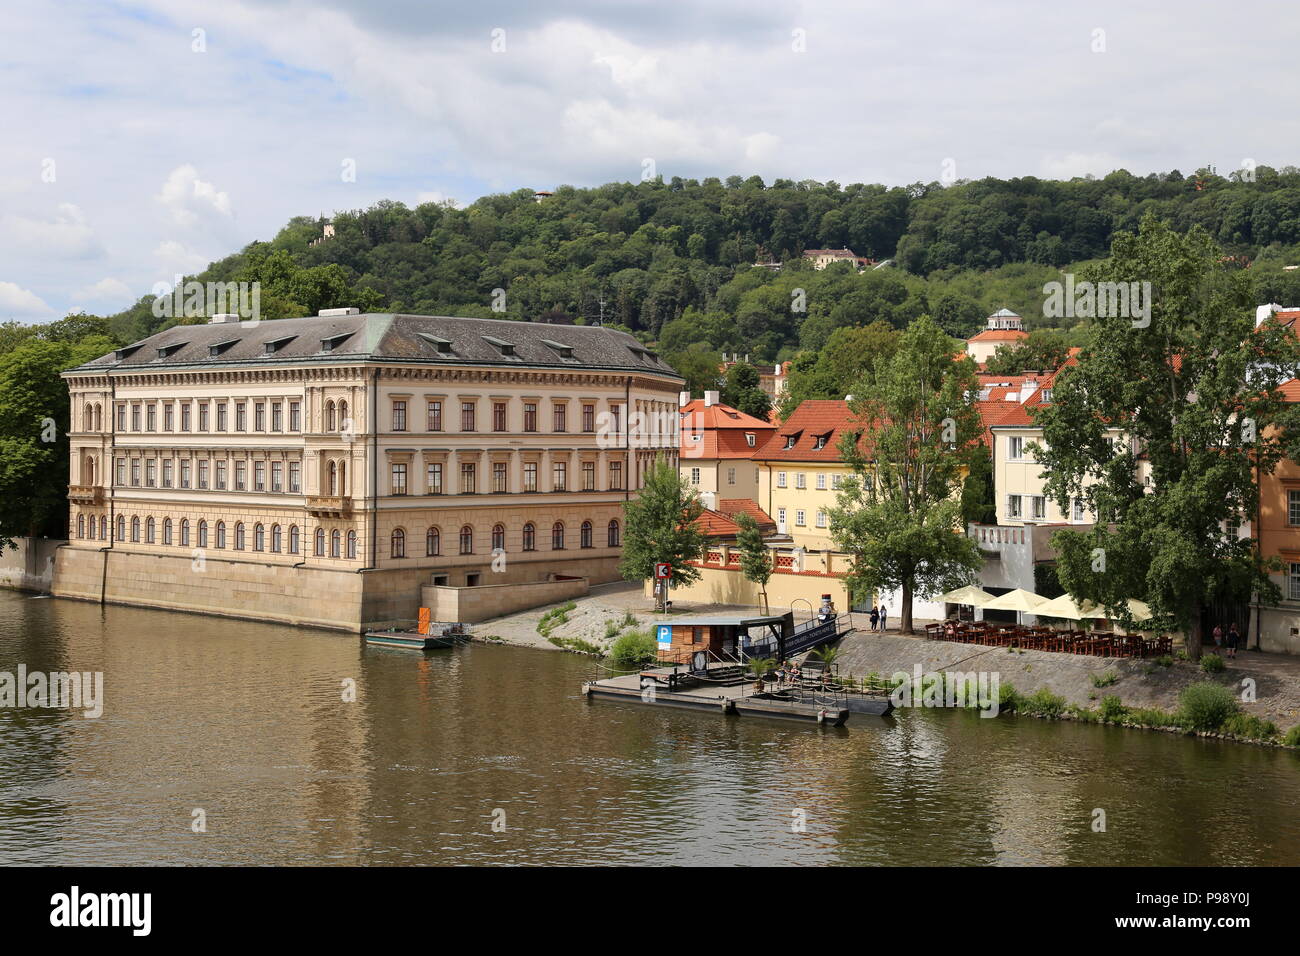 Lichtenstein Palast und Petřín-Hügel, Insel Kampa, Malá Strana (Kleinseite), Prag, Tschechien (Tschechische Republik), Europa Stockfoto